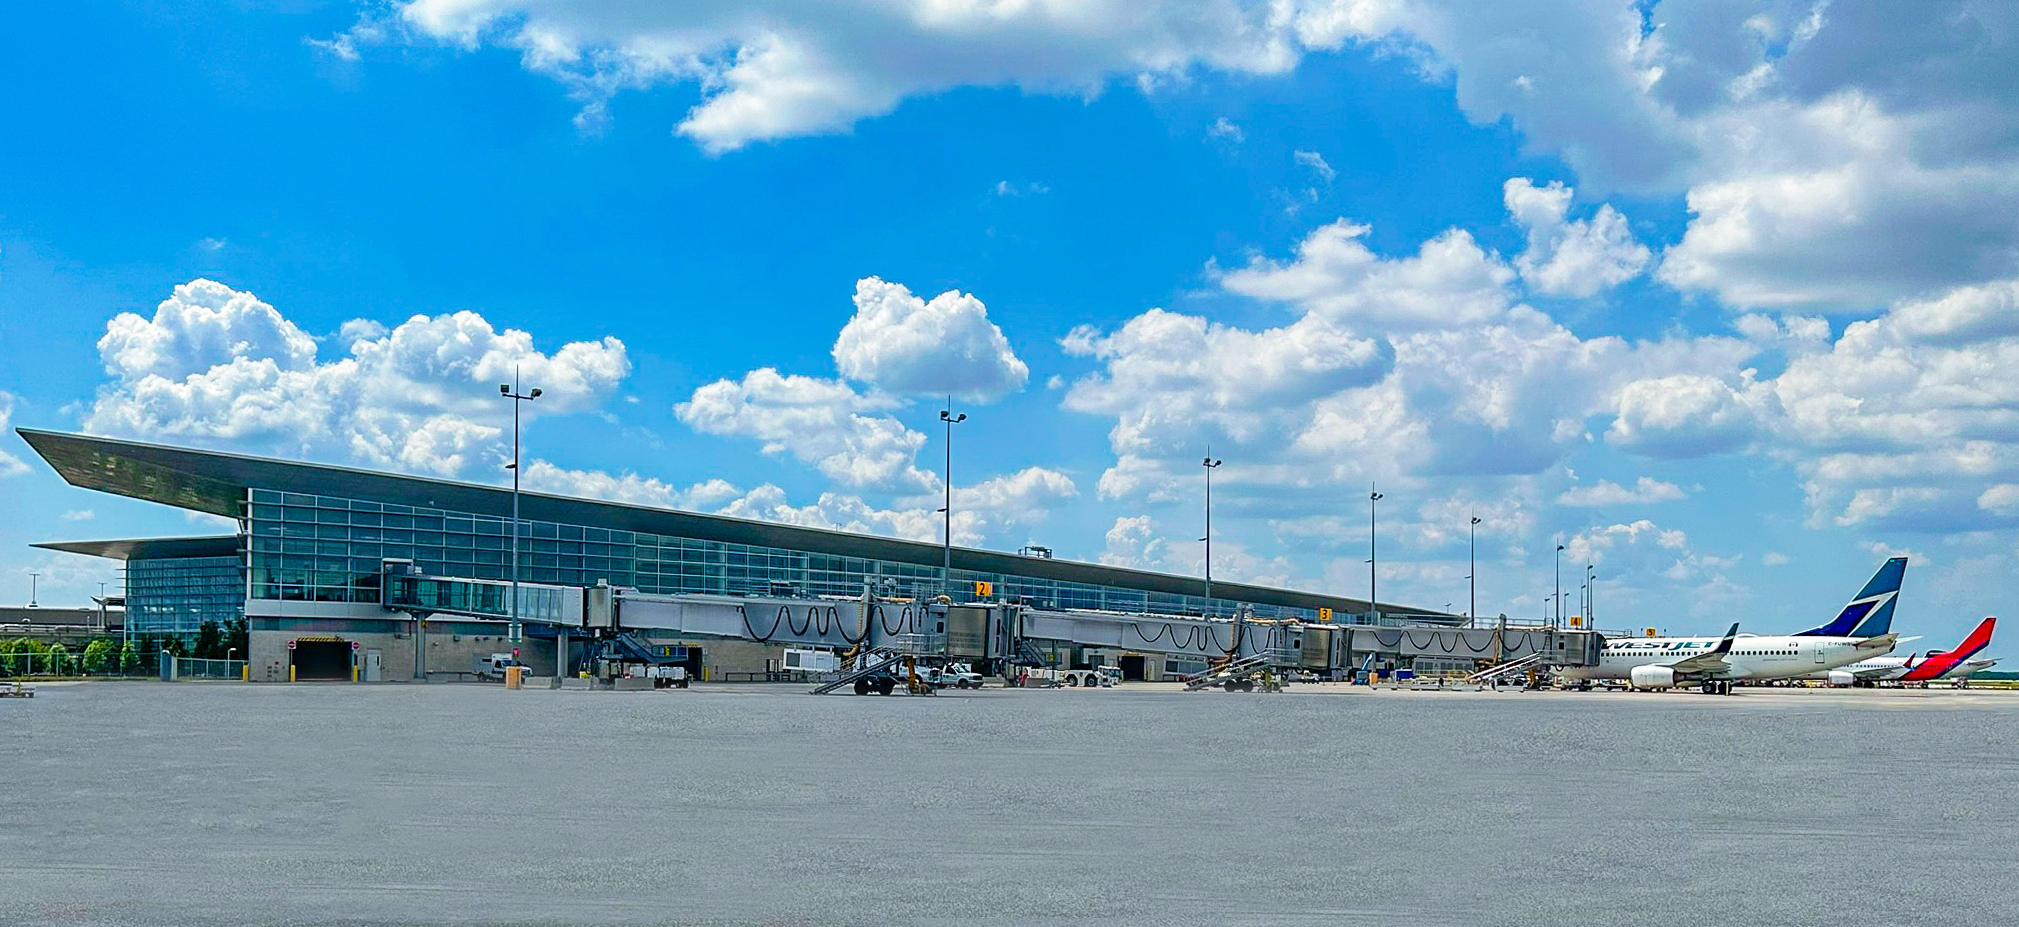 Sous un ciel bleu avec quelques nuages, deux avions sont stationnés aux passerelles d'embarquement de l'aérogare de l'aéroport international Richardson de Winnipeg avec l'aire de trafic principale étant au premier plan.